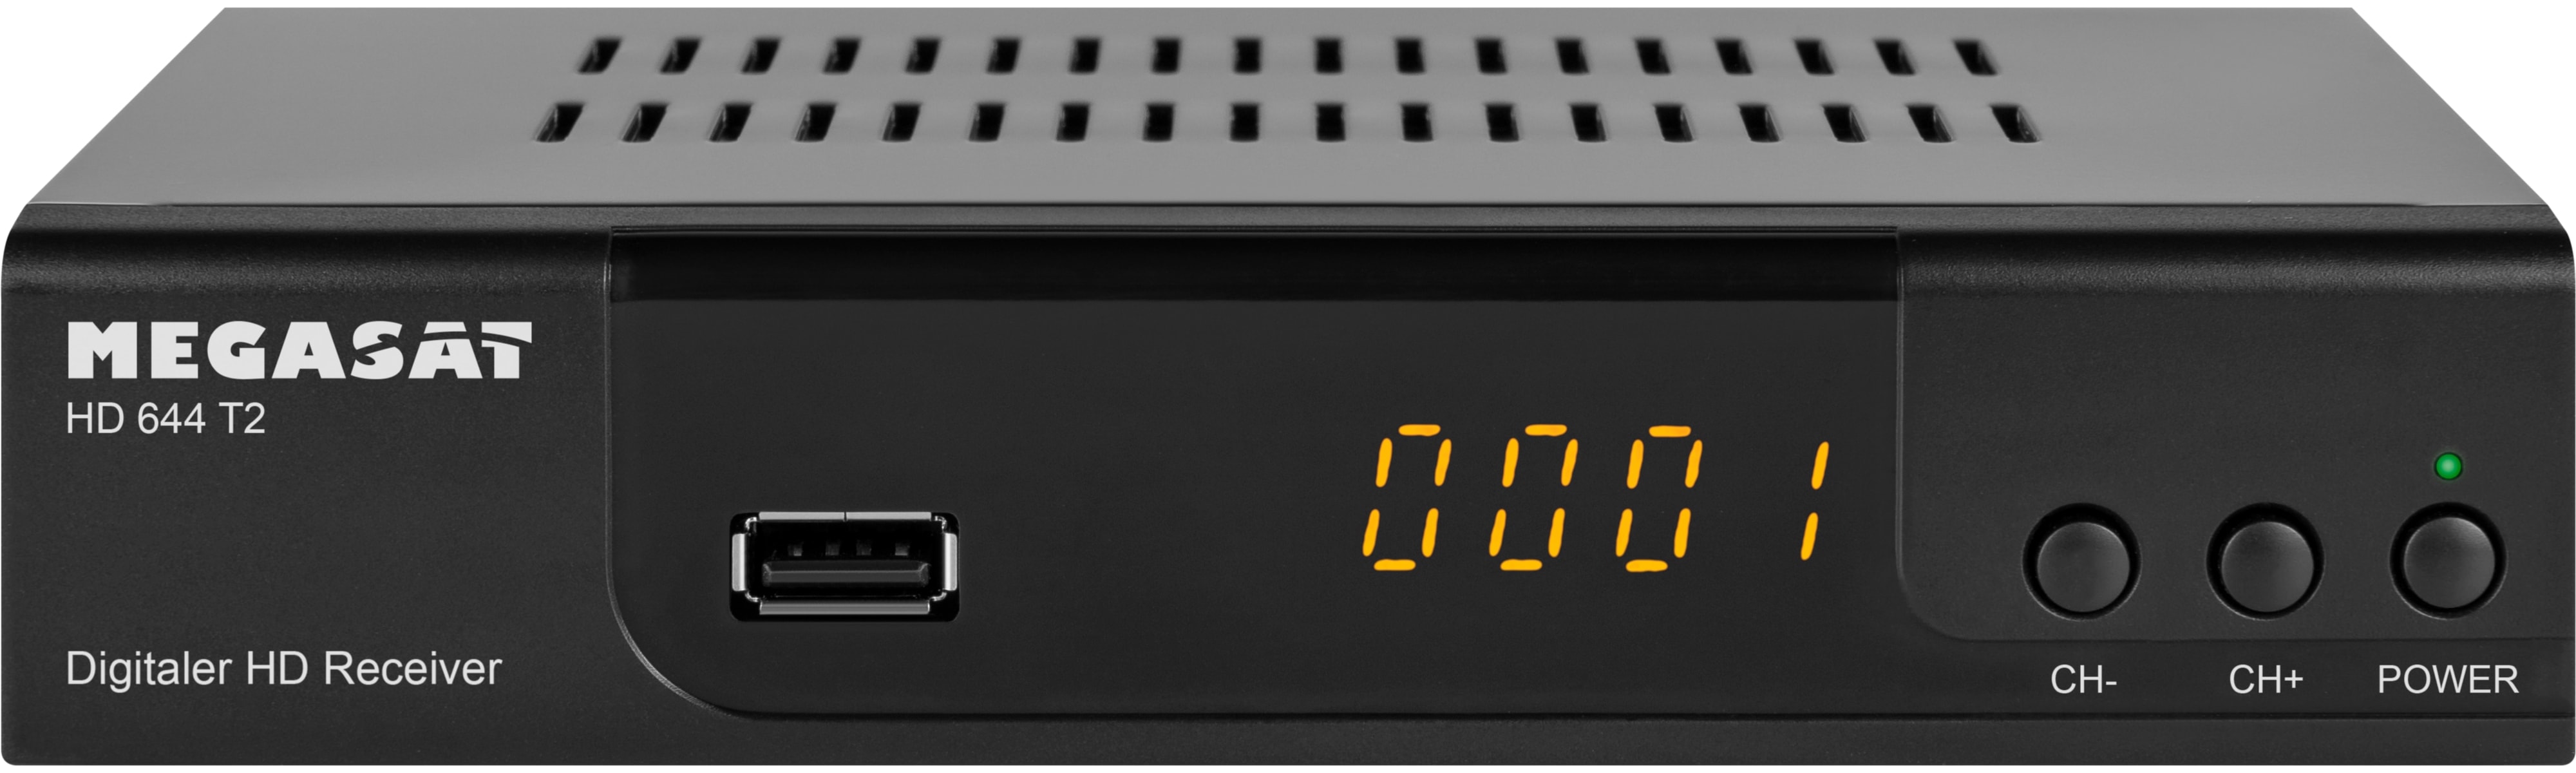 MEGASAT Receiver HD 644 T2, DVB-T2, Full-HD